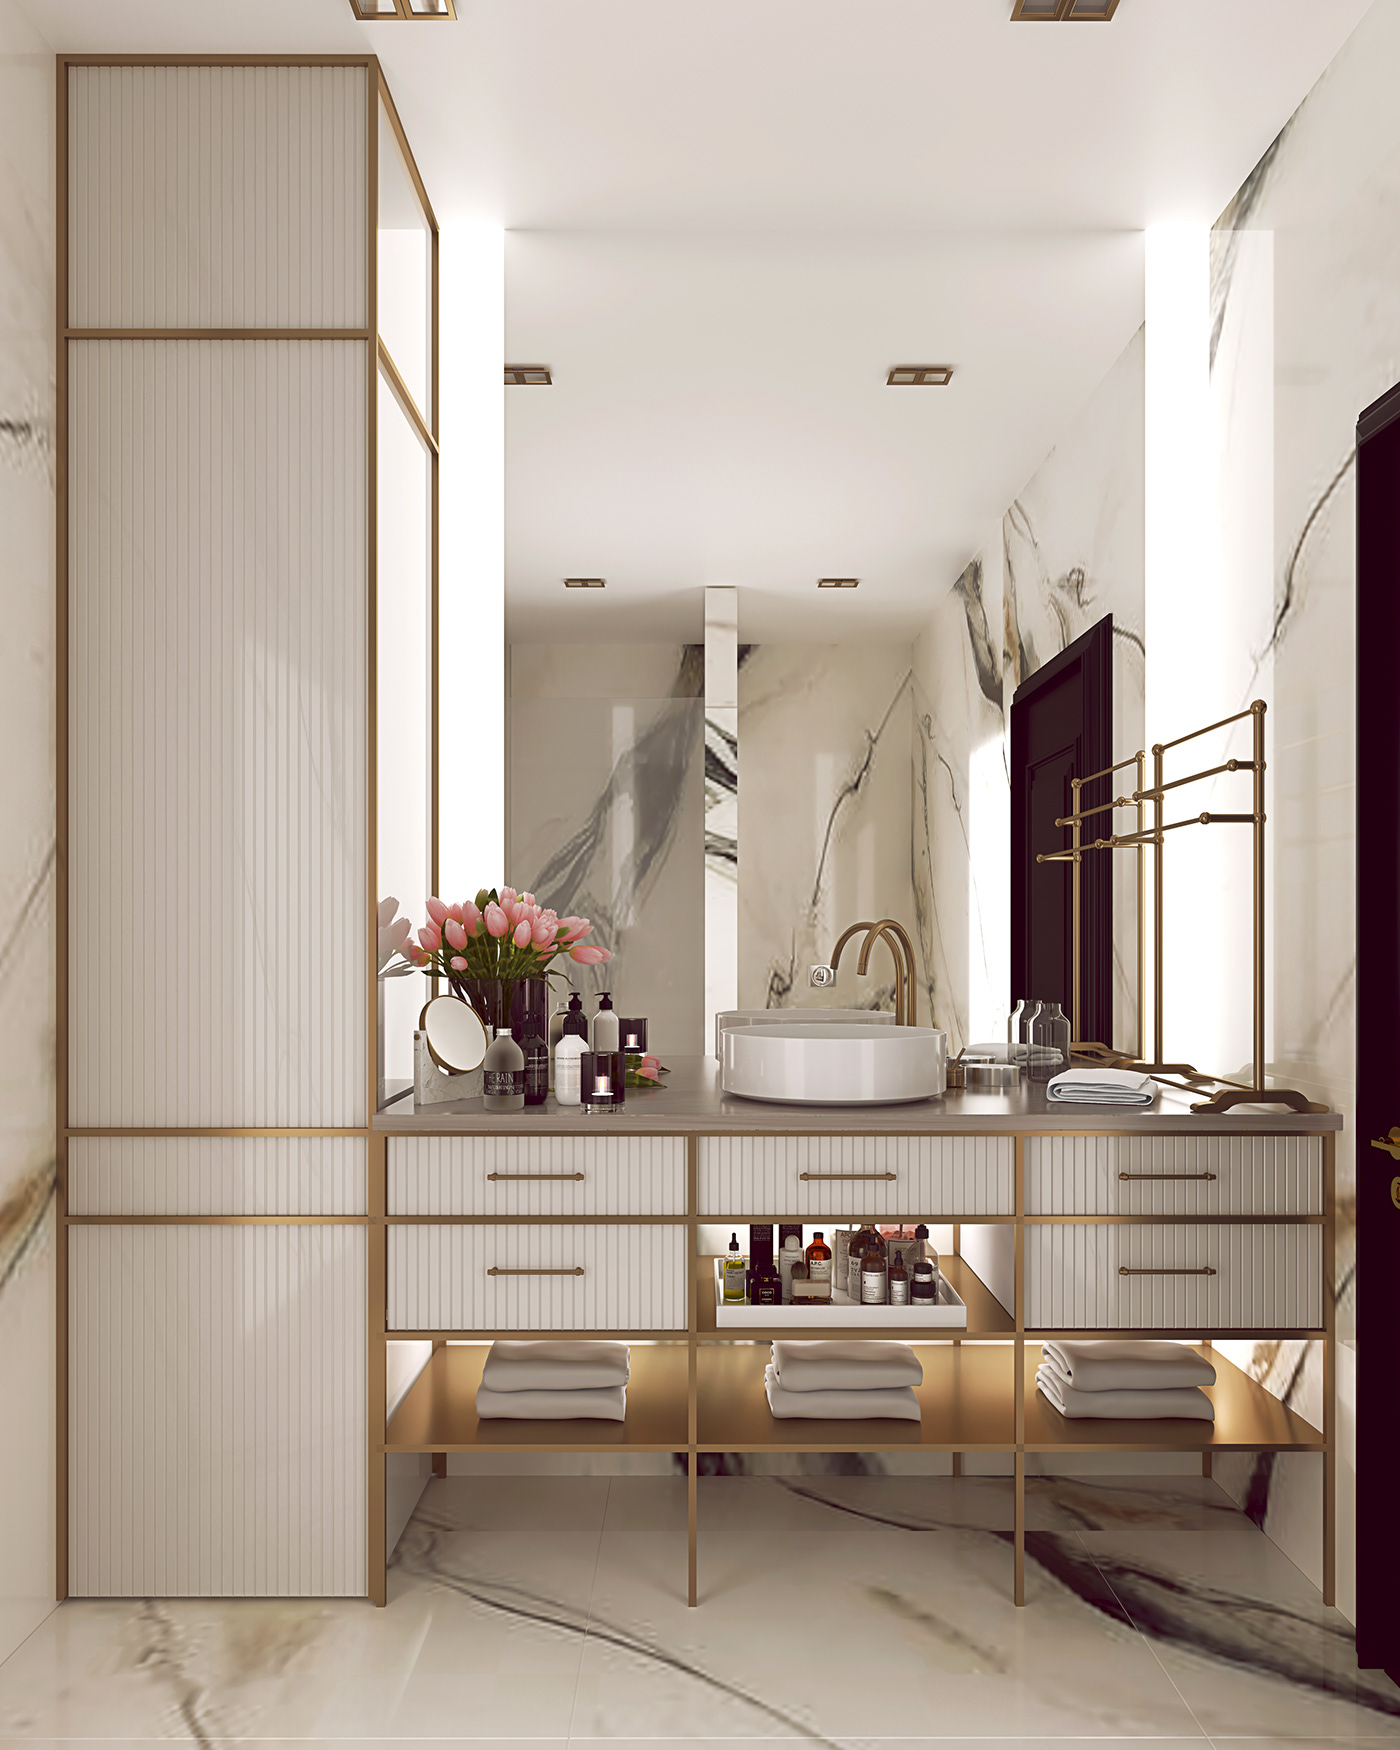 3ds max ARCHIRECTURAL RENDER bathroom design interior render luxury Luxury Design vray